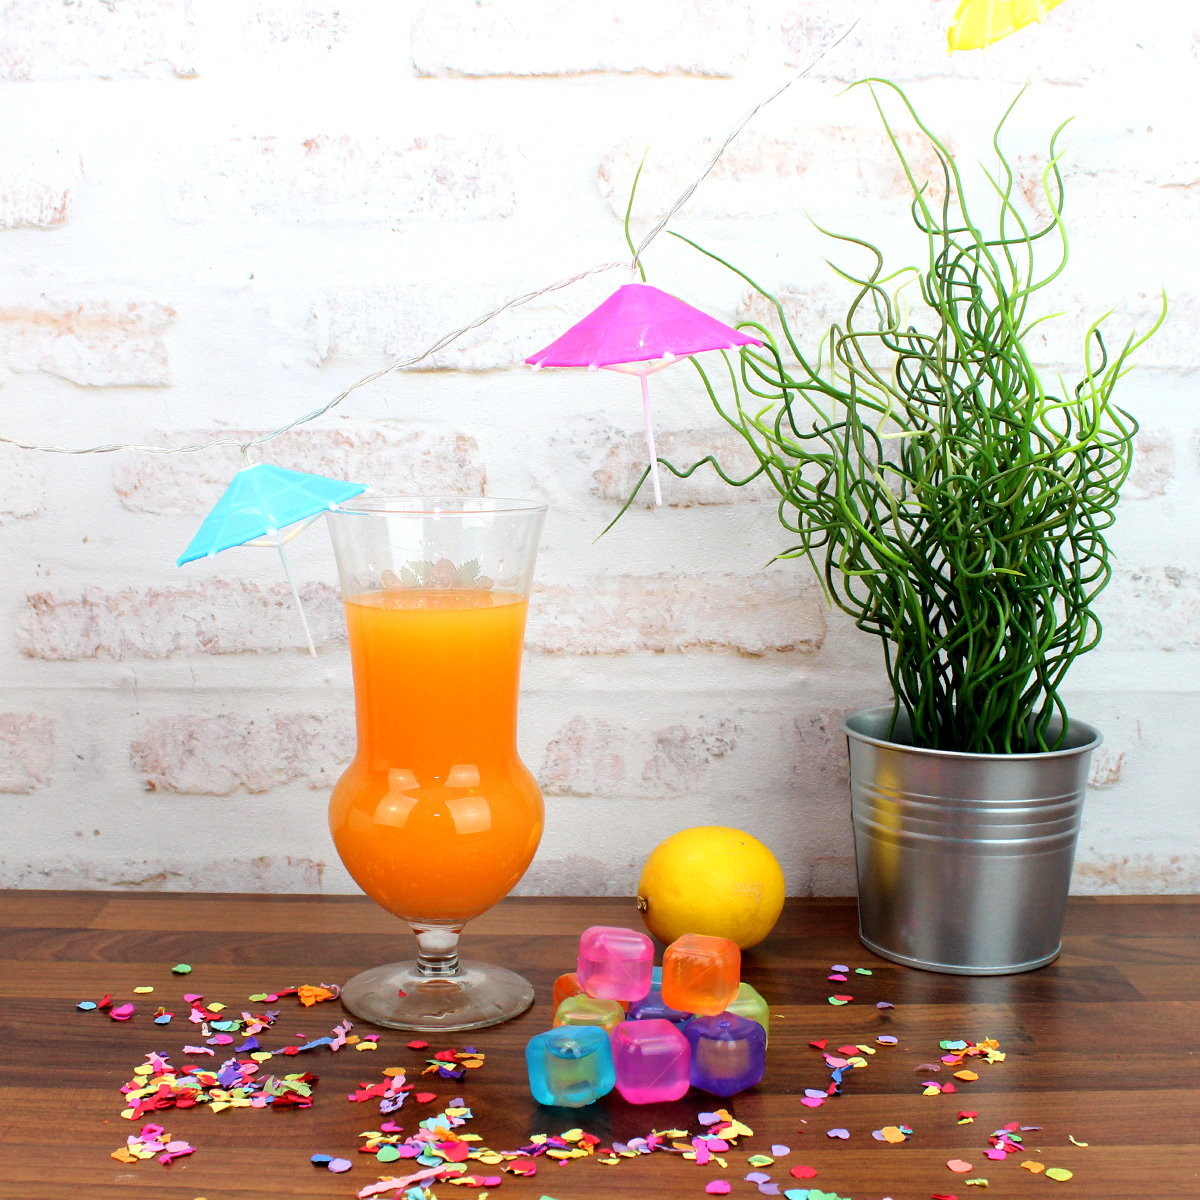 Bunte Eiswürfel in orange, pink, blau, gelb und lila - Kunststoff - wiederverwendbar - 10 Stück